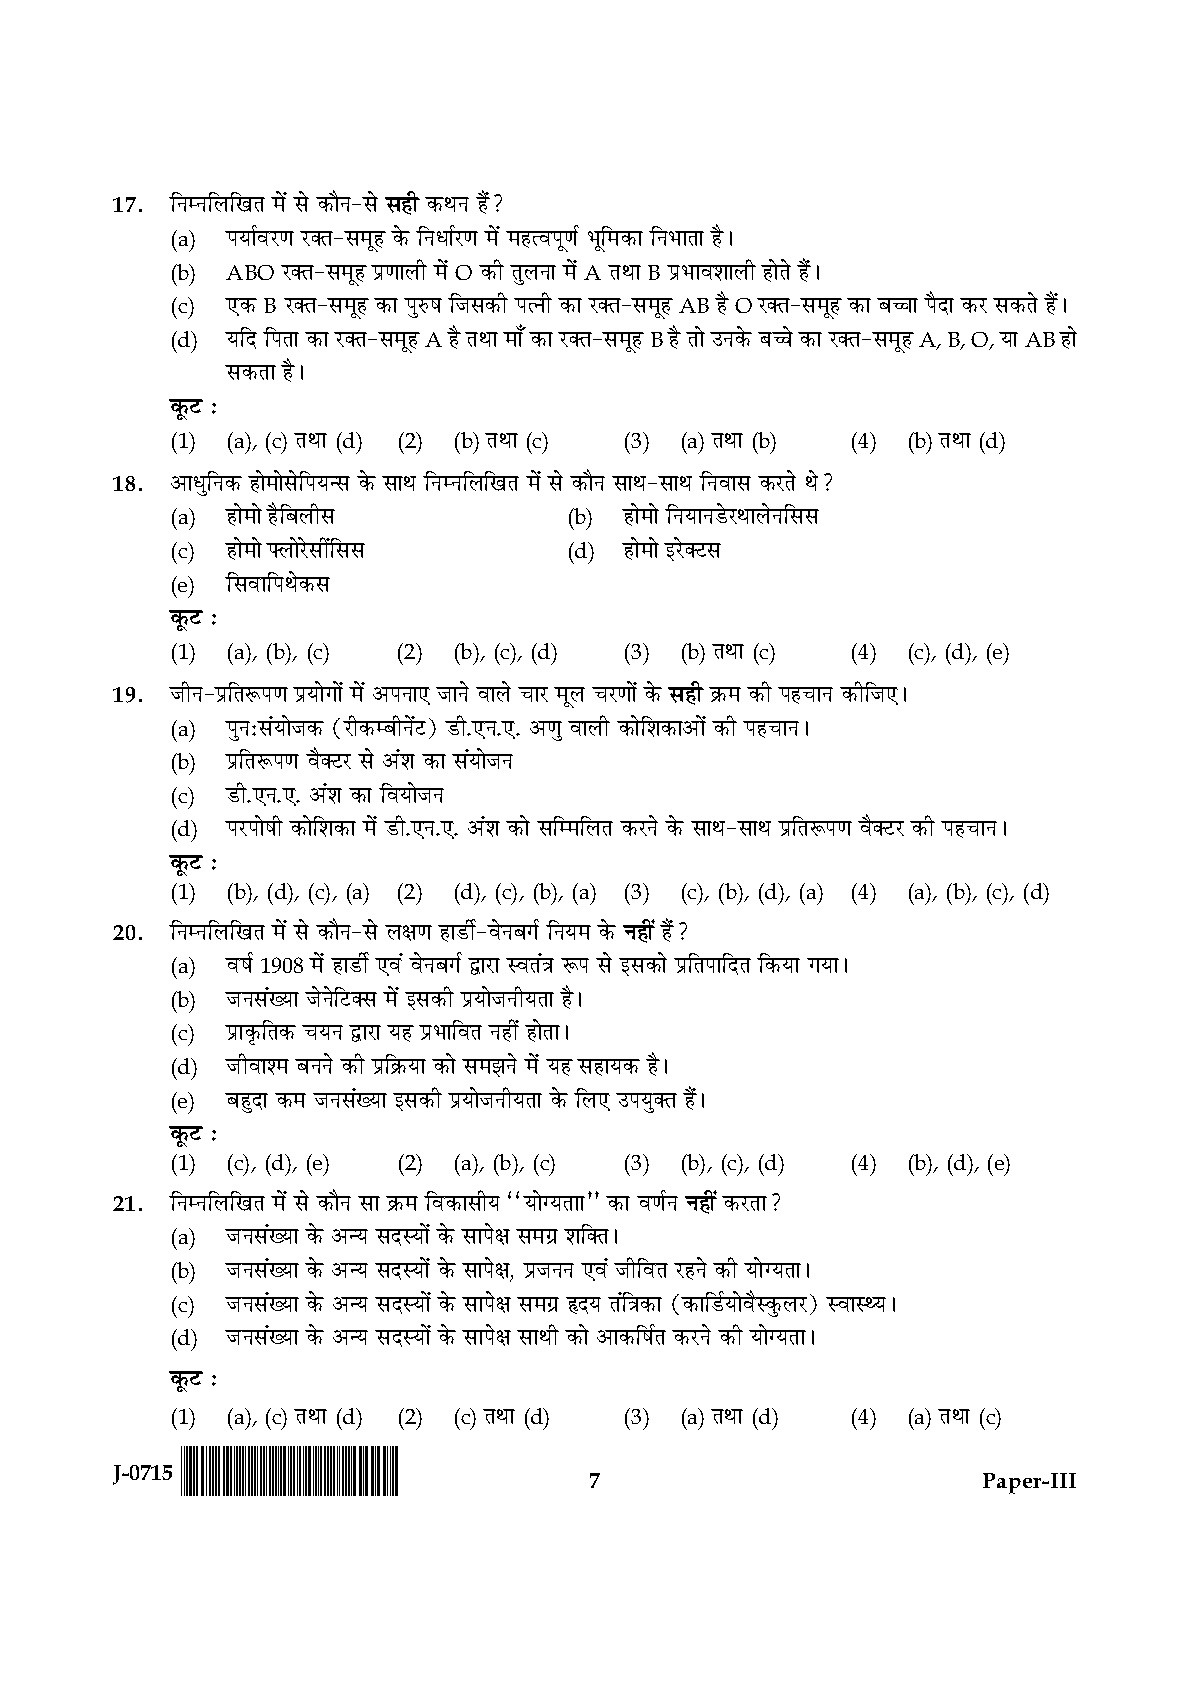 UGC NET Anthropology Question Paper III June 2015 7